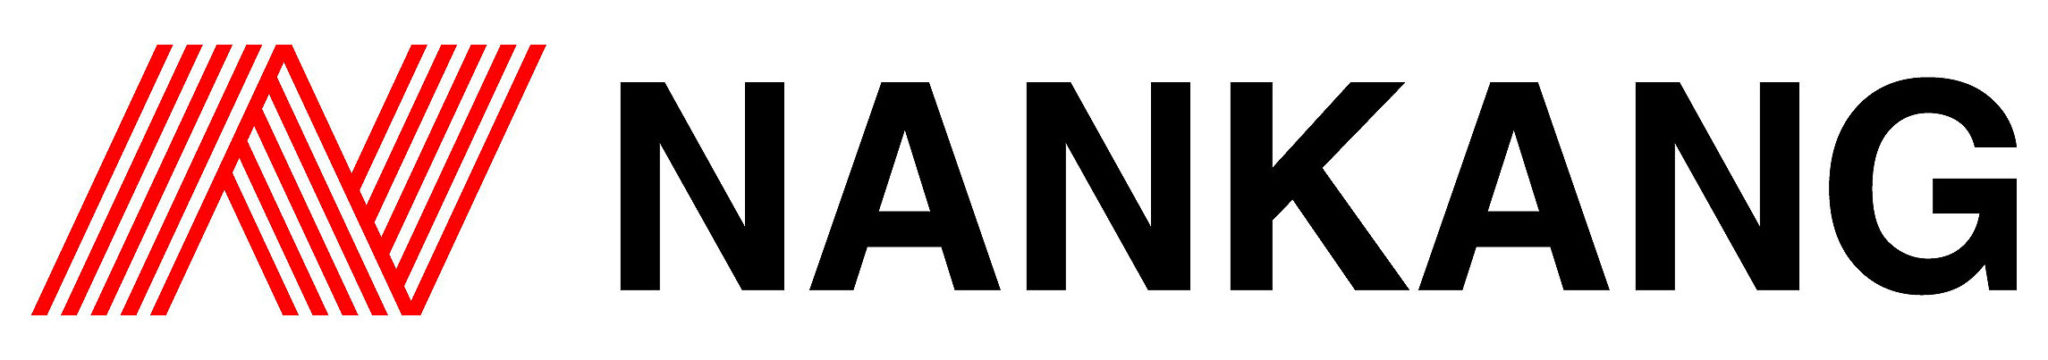 nankang_logo